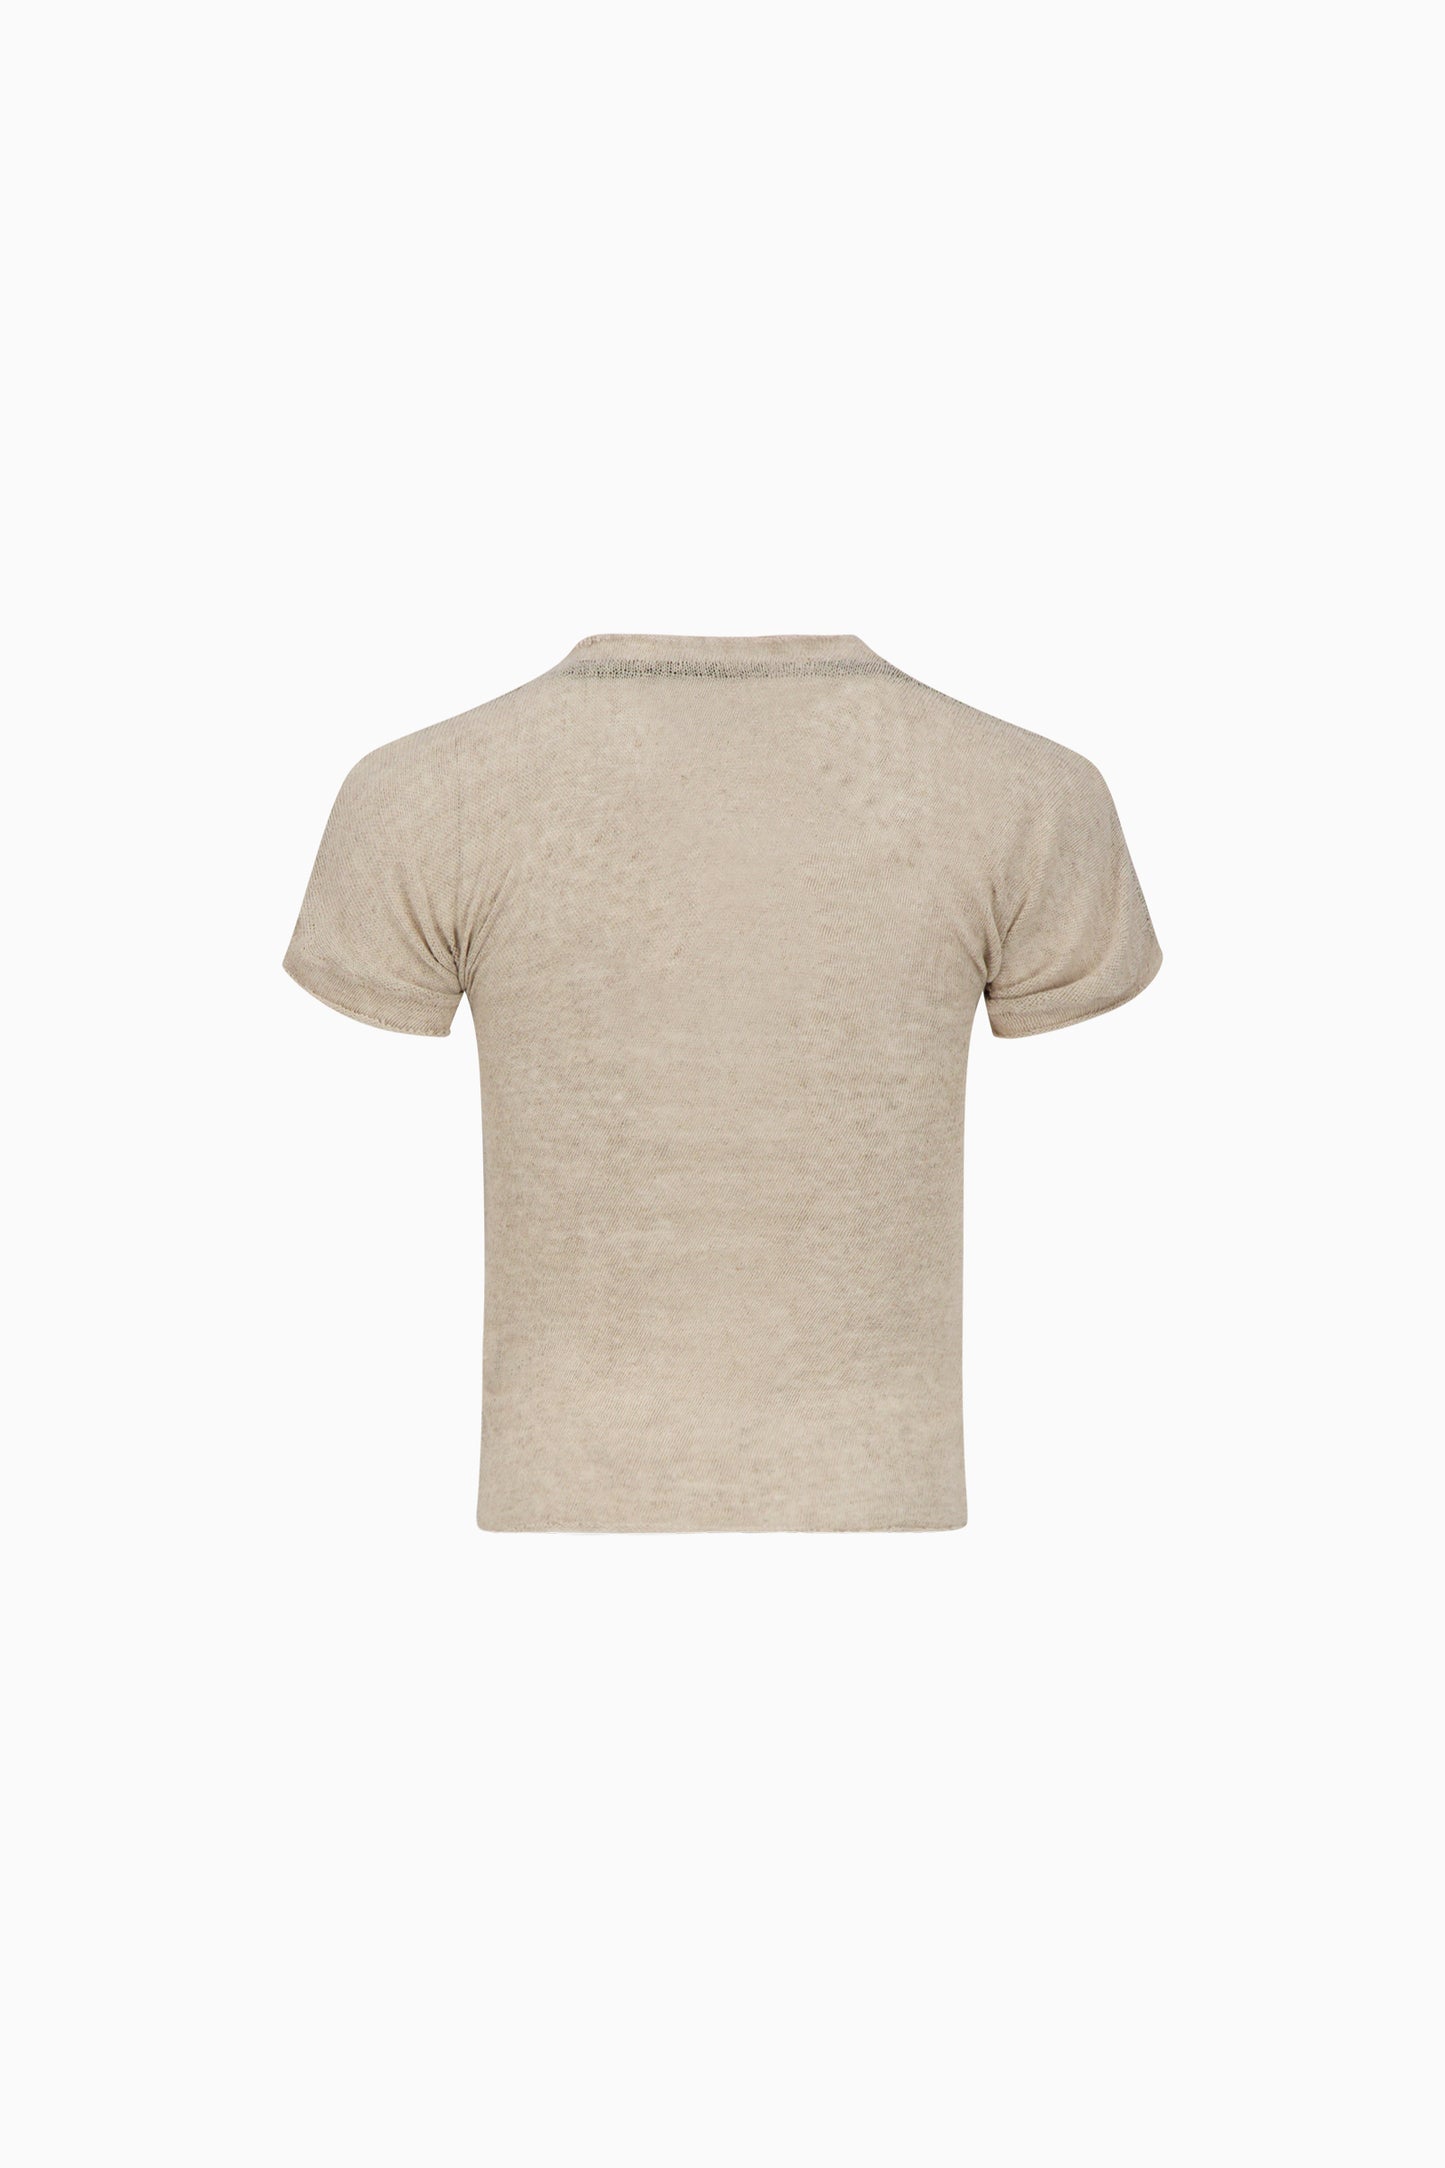 Deconstructed Linen T-Shirt